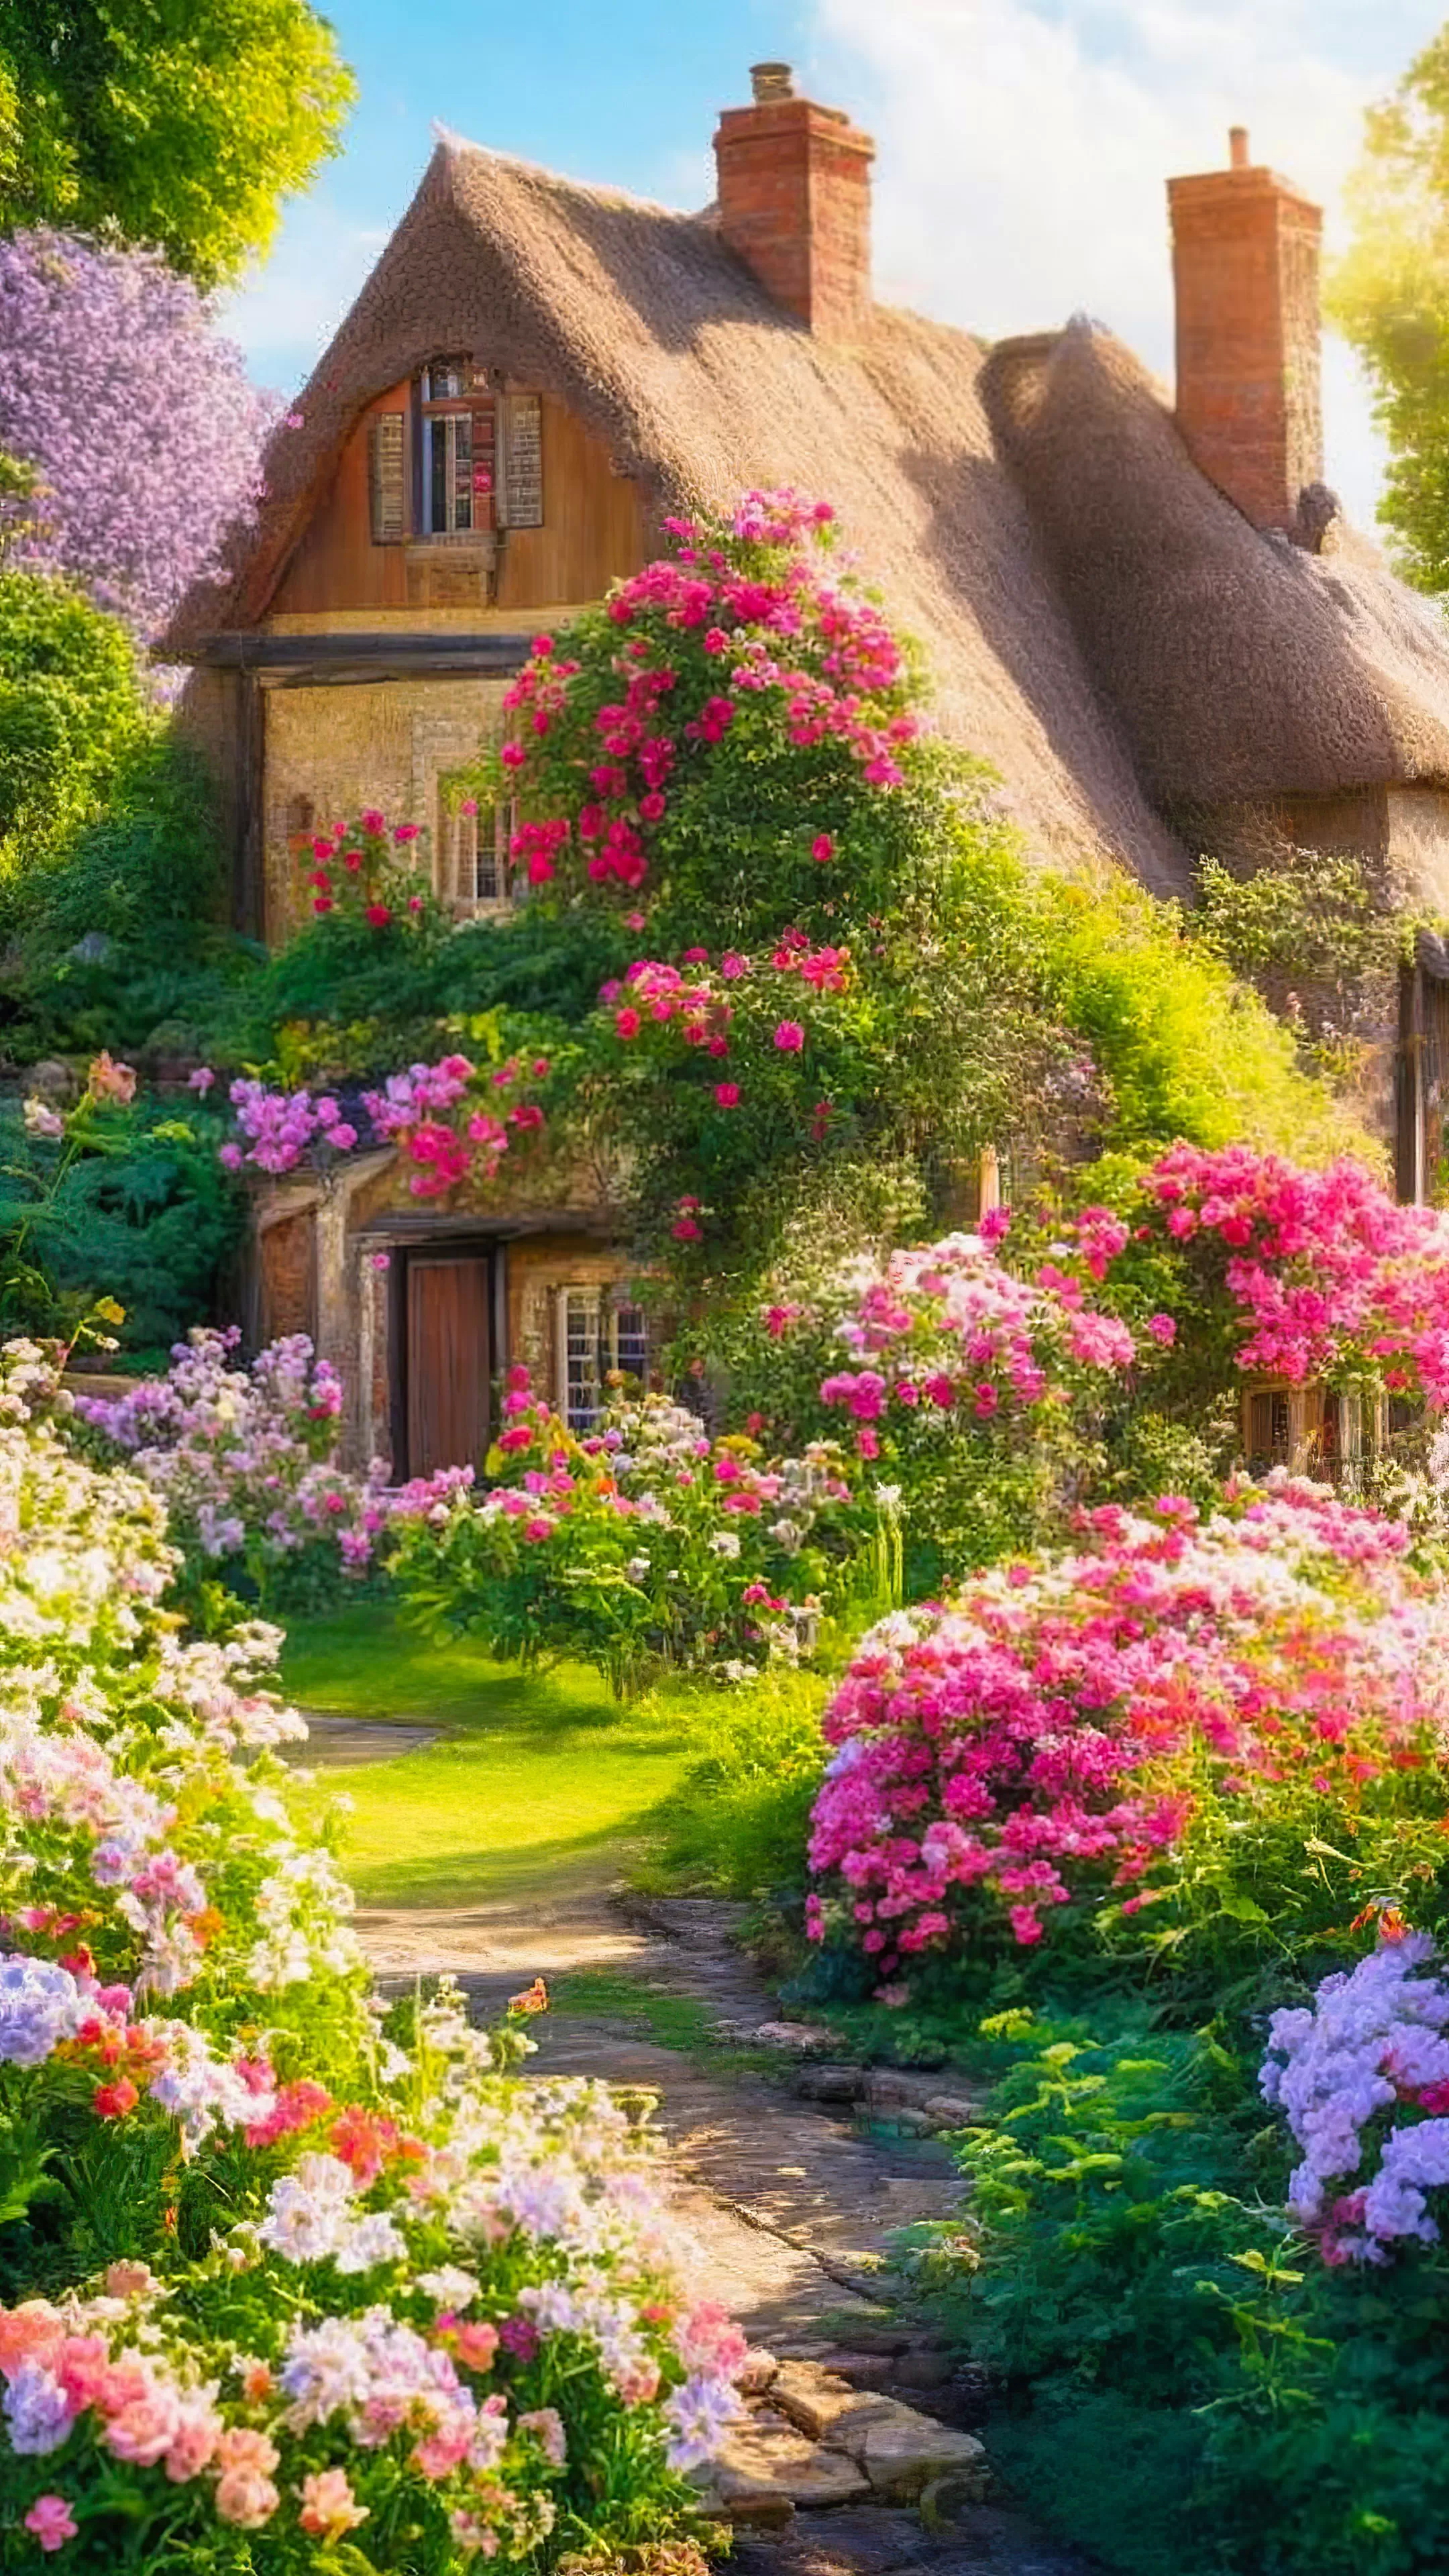 Découvrez le charme de notre fond d'écran HD de nature pour votre téléphone, présentant un charmant cottage avec un jardin fleuri vibrant sous un jour ensoleillé, et laissez votre appareil rayonner avec la chaleur d'un jour d'été.